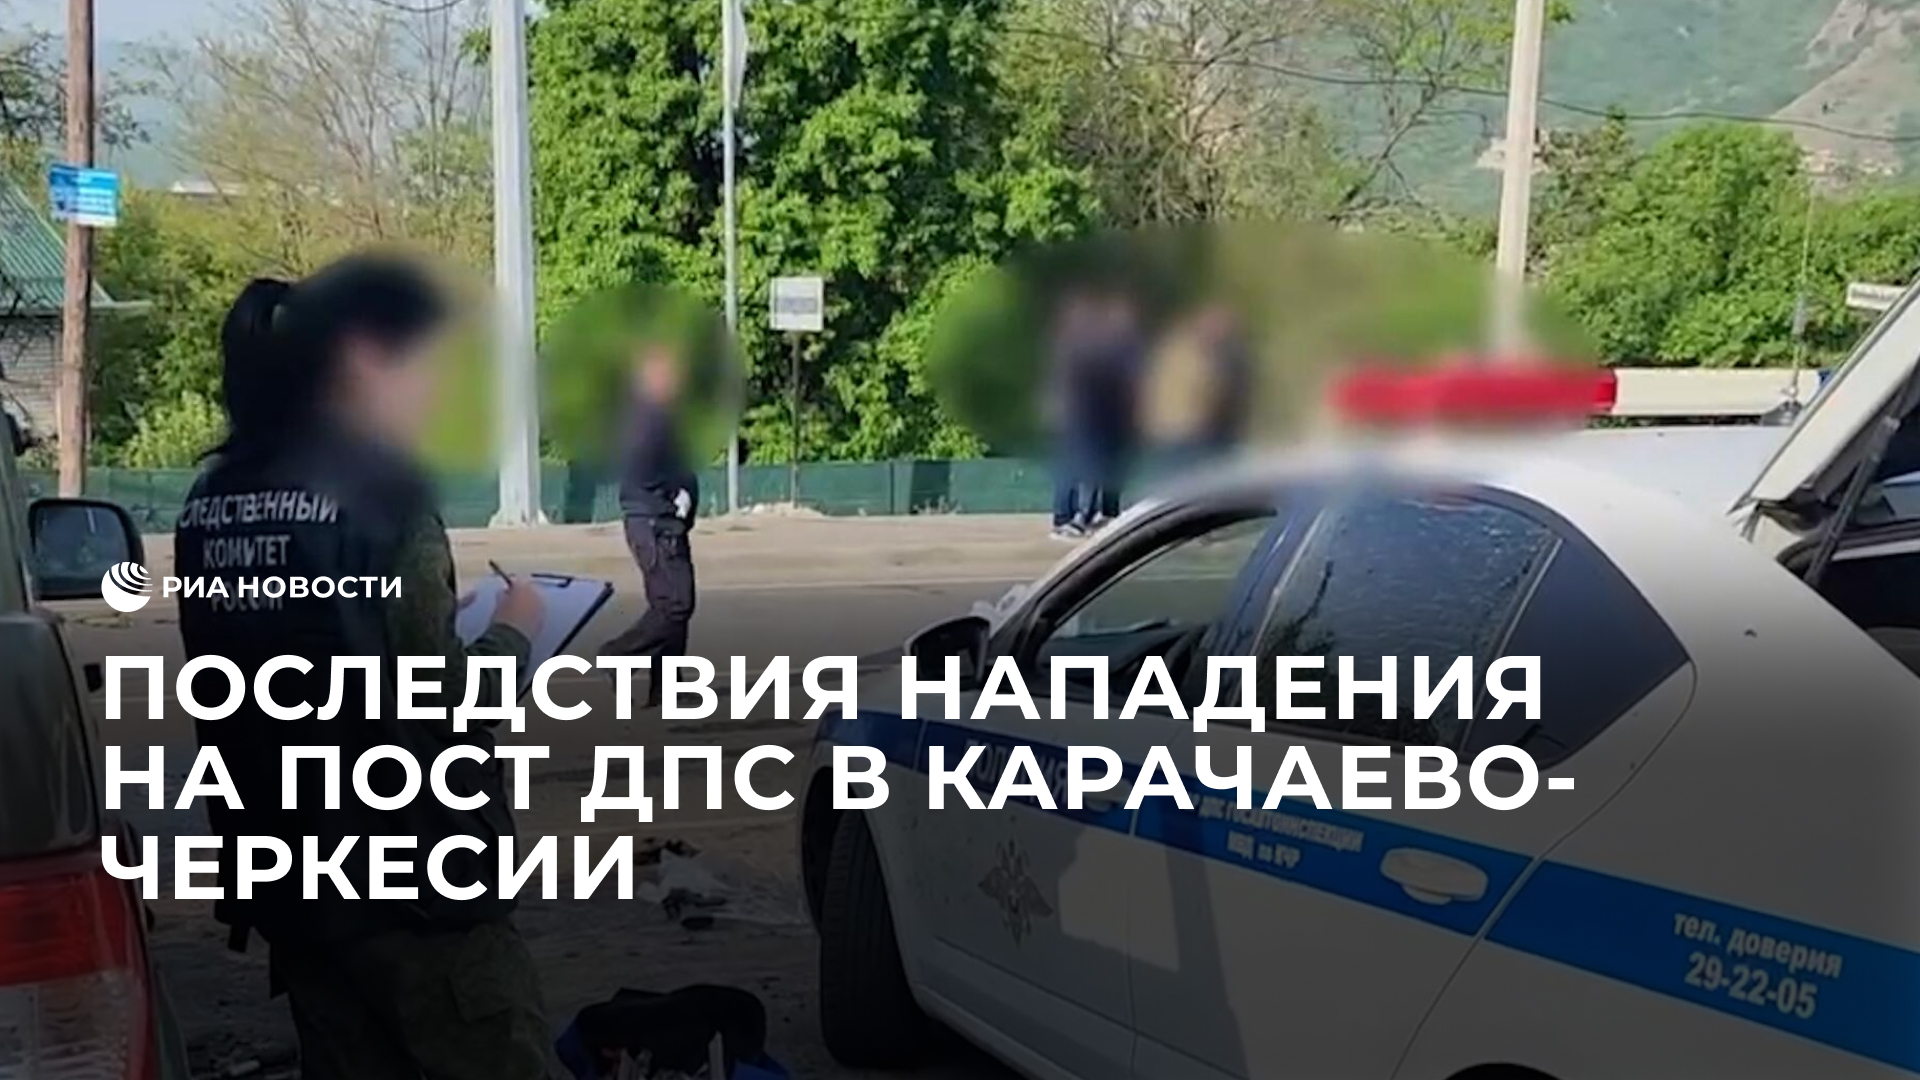 Последствия нападения на пост ДПС в Карачаево-Черкесии